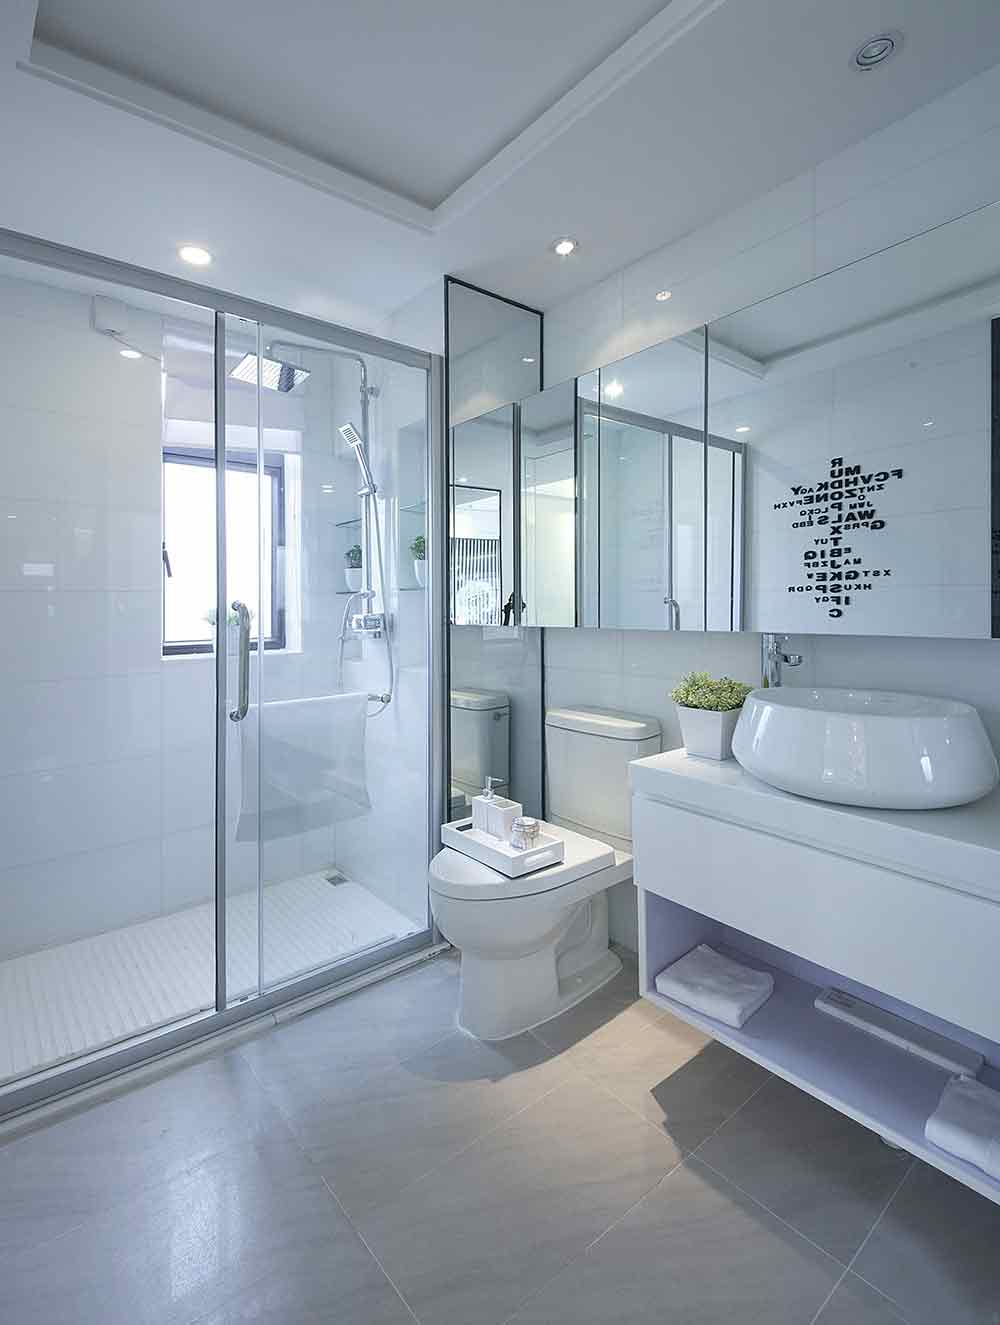 卫生间的镜面设计凸显了立体感，白色系最容易给人带来放松的感受。